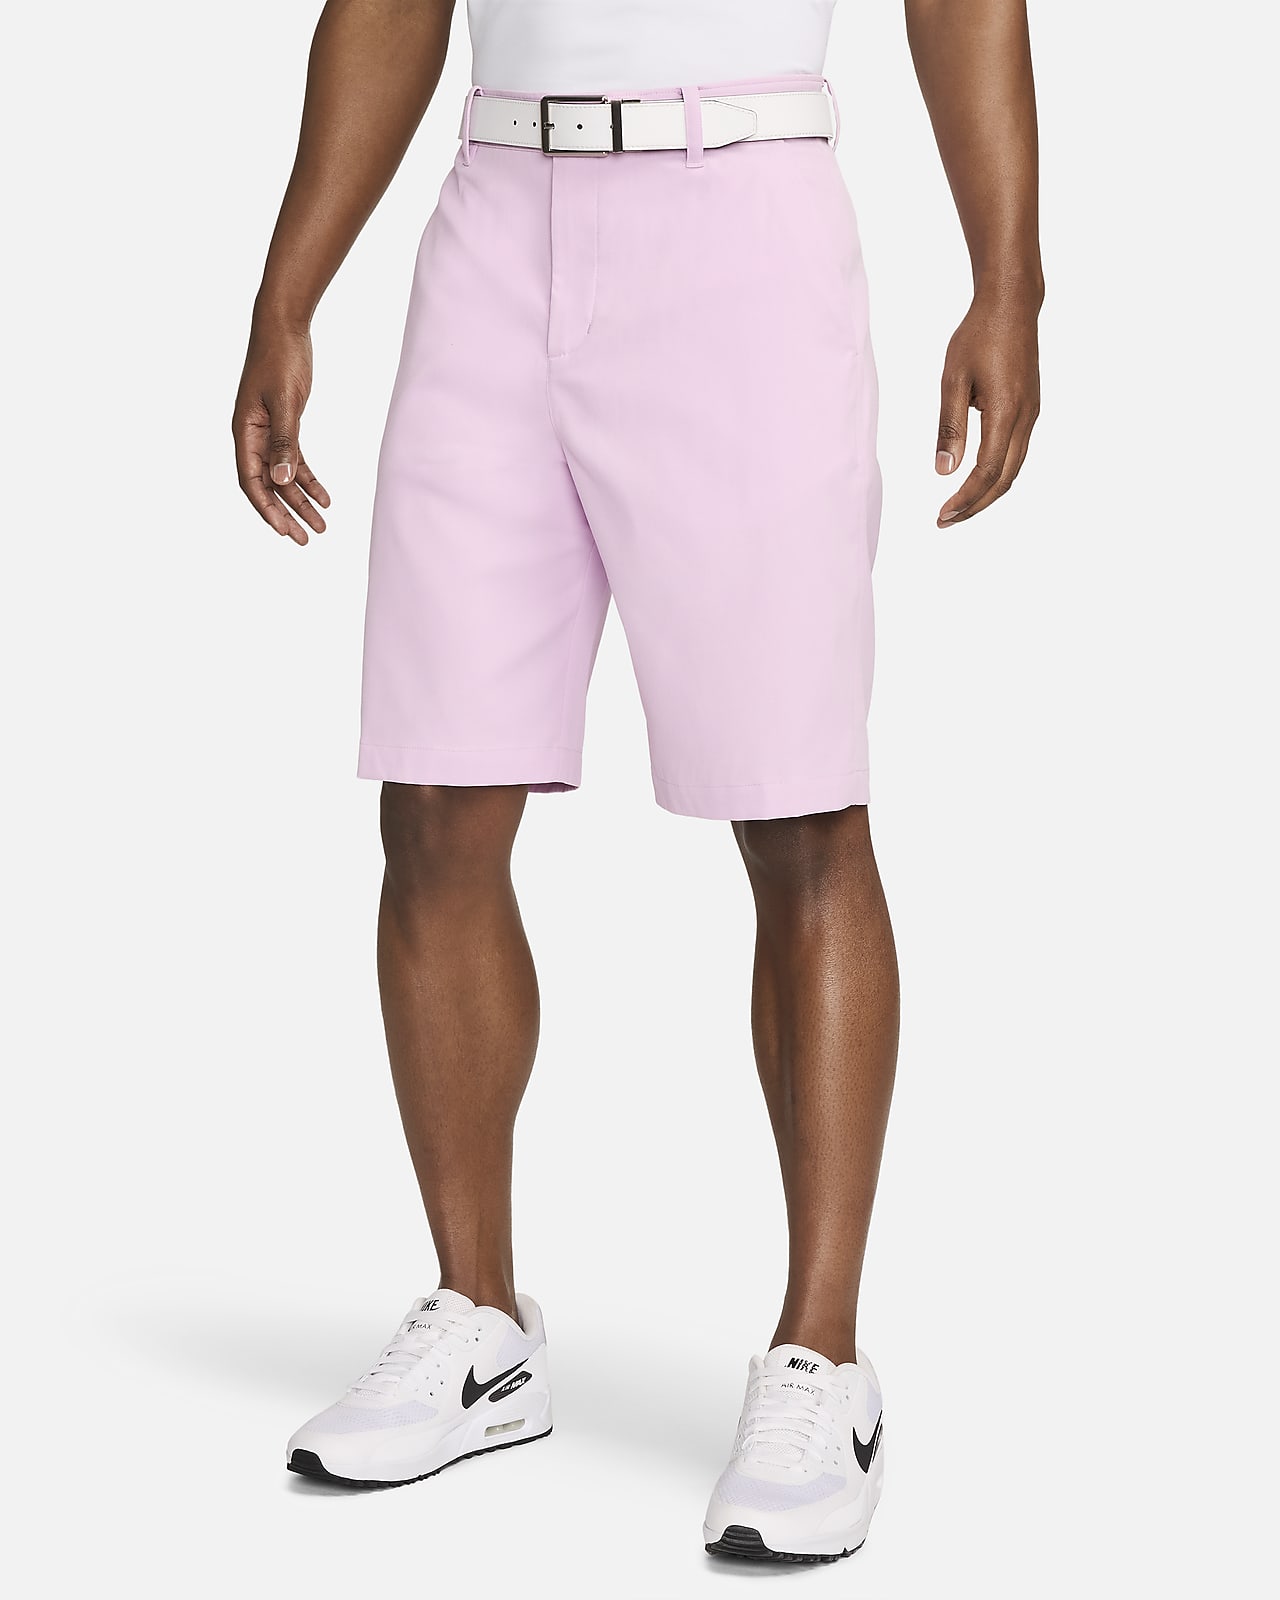 Shorts chinos de golf de 25 cm para hombre Nike Tour